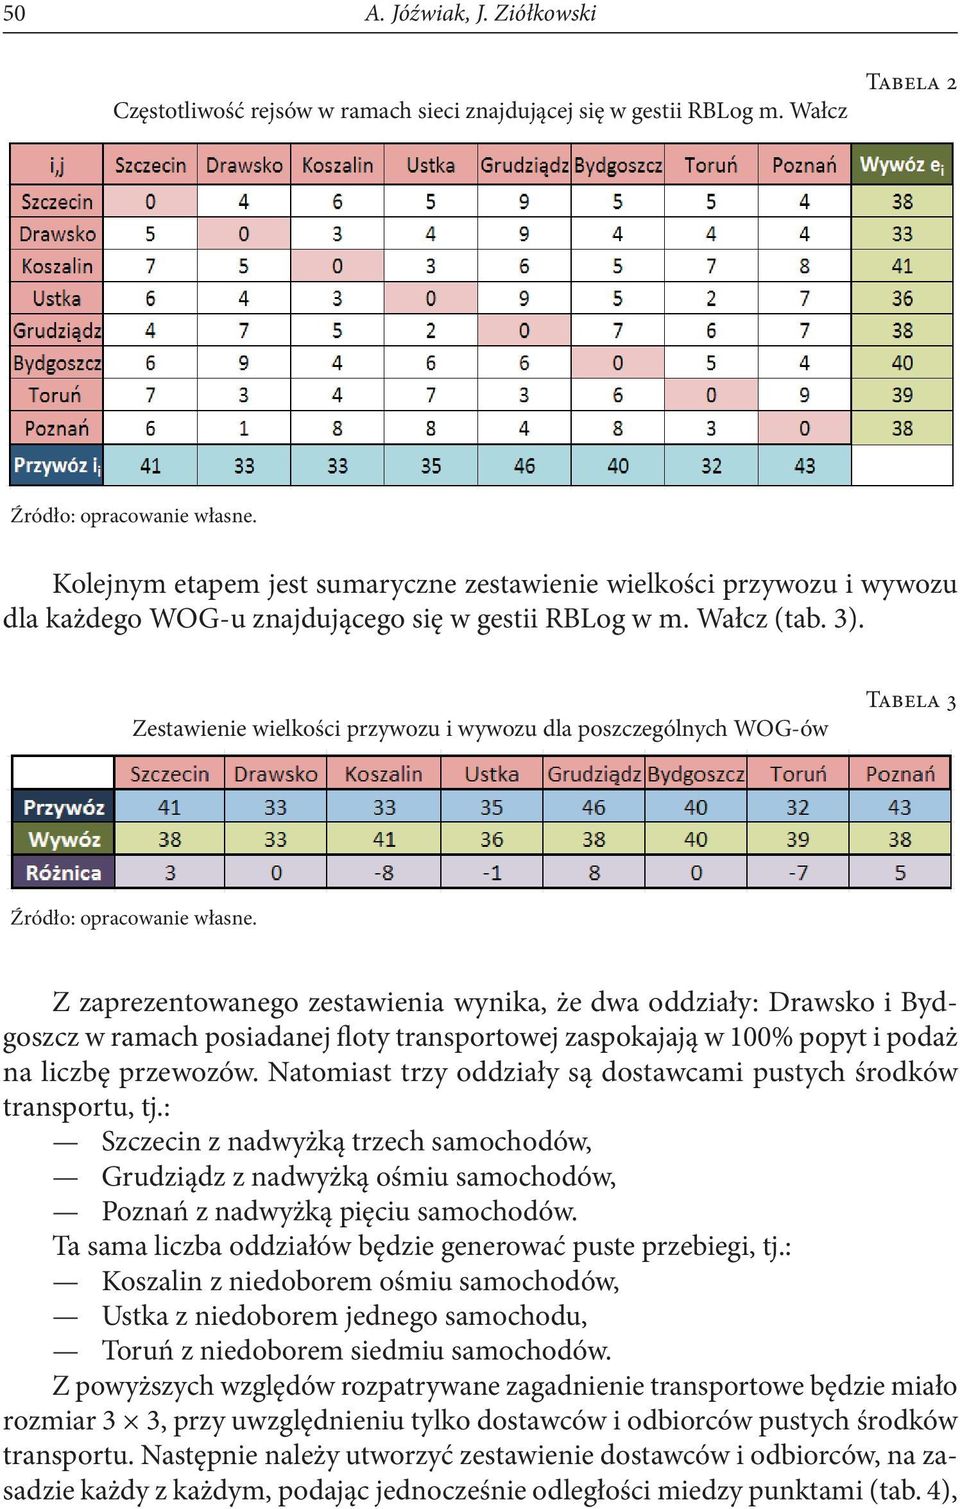 Zestawienie wielkości przywozu i wywozu dla poszczególnych WOG-ów Tabela 3 Z zaprezentowanego zestawienia wynika, że dwa oddziały: Drawsko i Bydgoszcz w ramach posiadanej floty transportowej